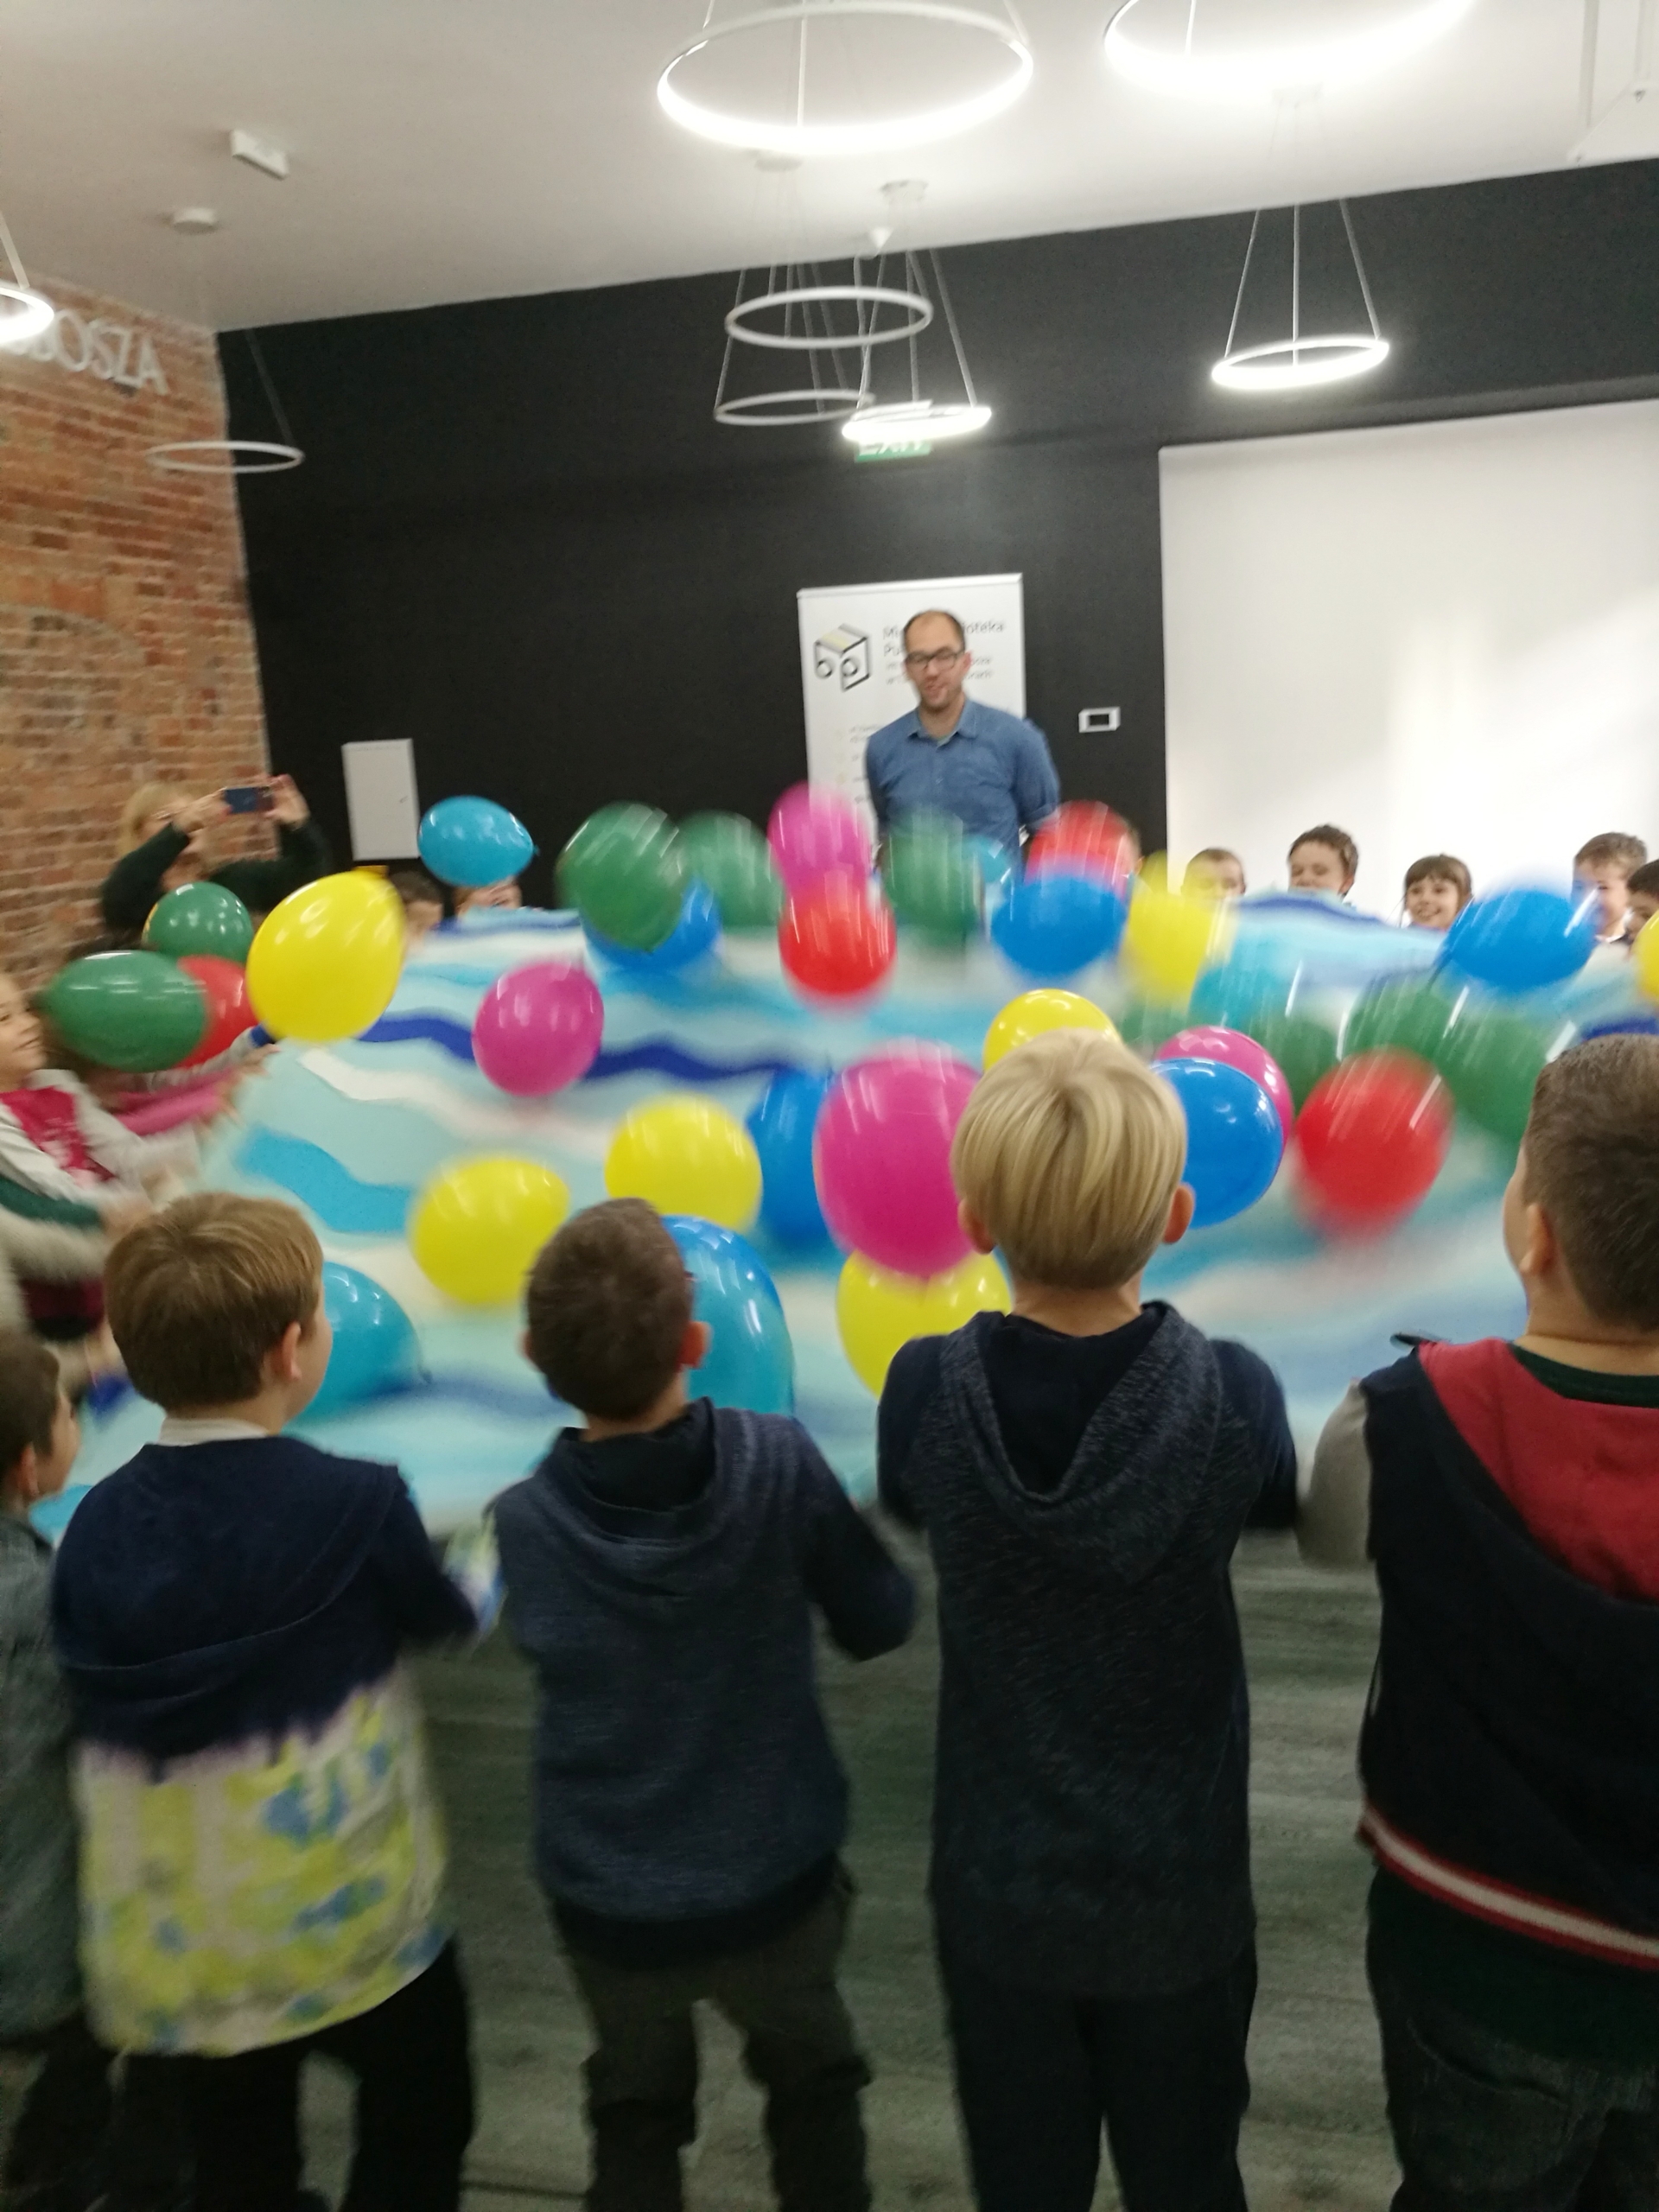 Pan Poeta bawiący się z dziećmi balonami na niebieskim materiale